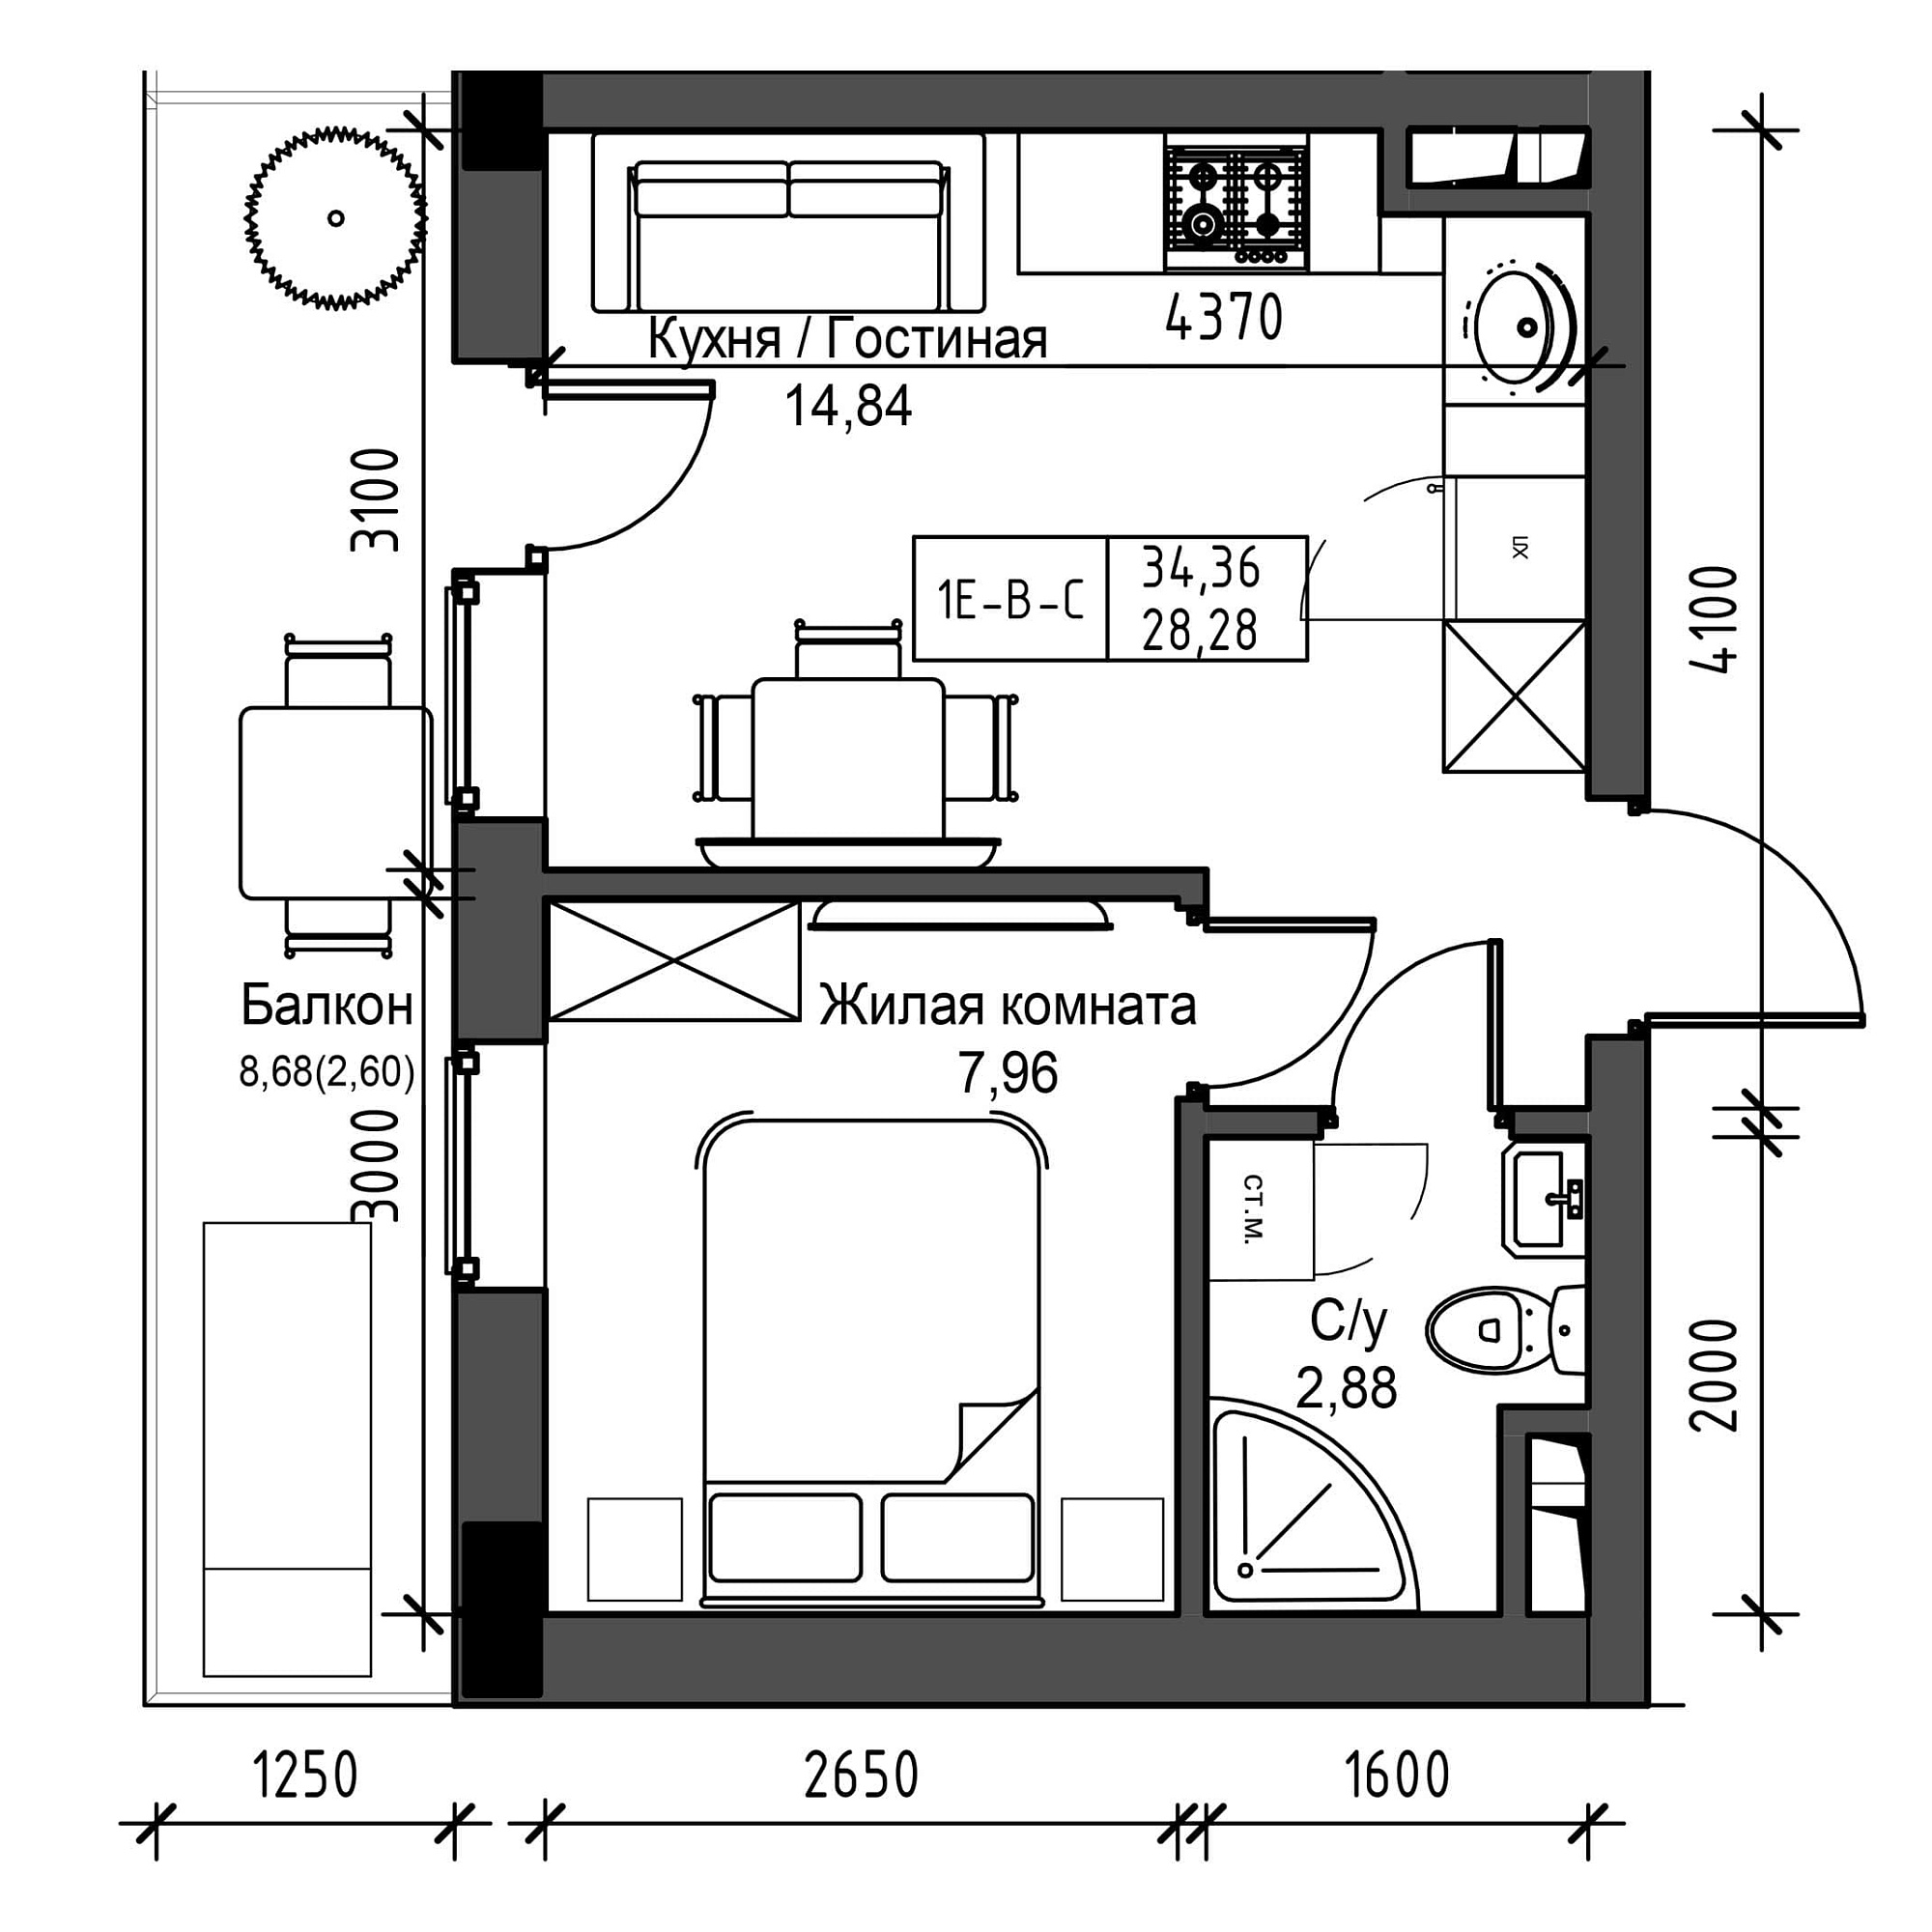 Планировка 1-к квартира площей 28.28м2, UM-001-06/0014.